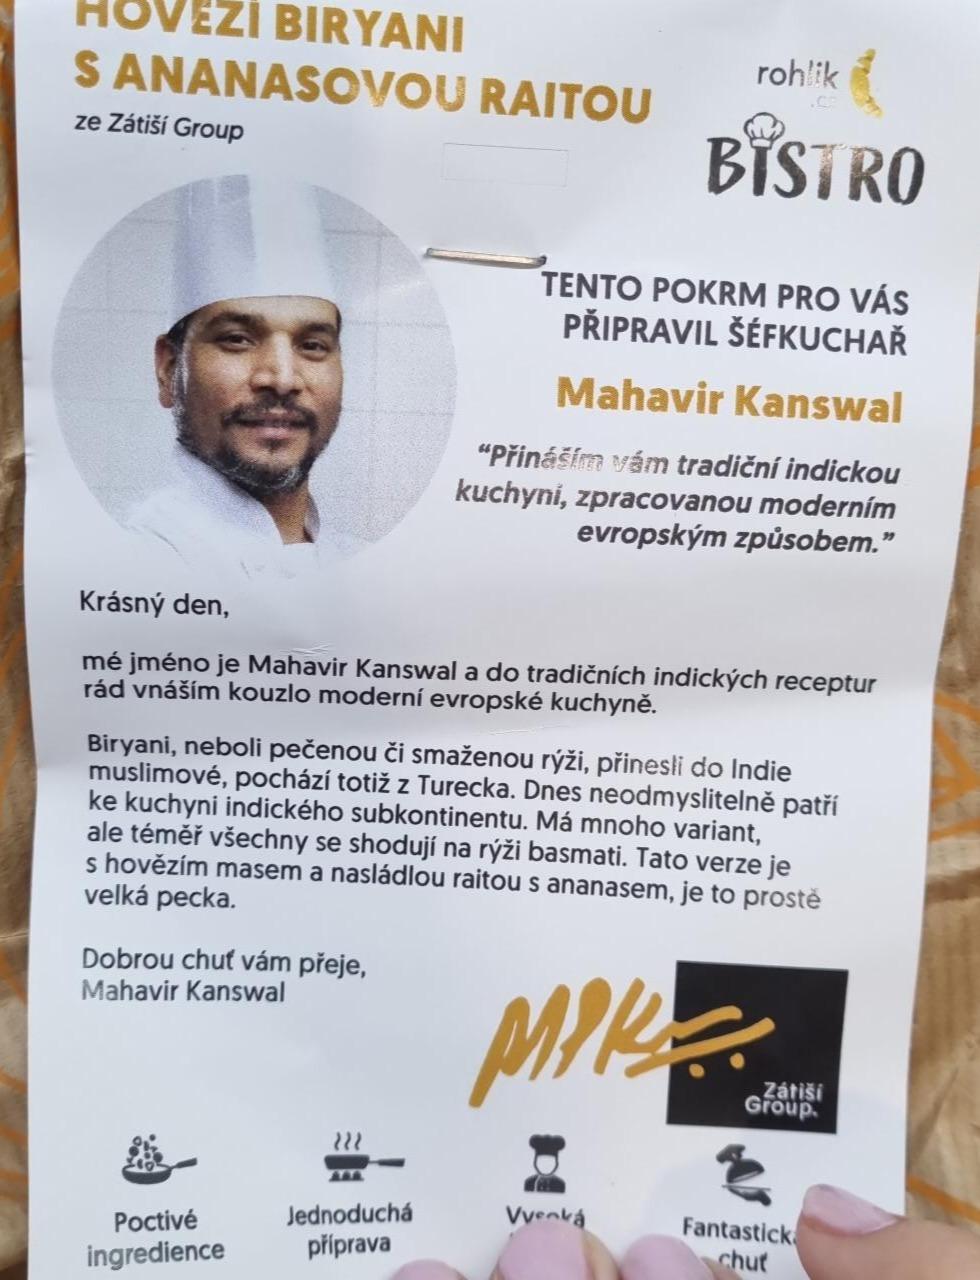 Fotografie - Hovězí biryani s ananasovou raitou Rohlik.cz Bistro